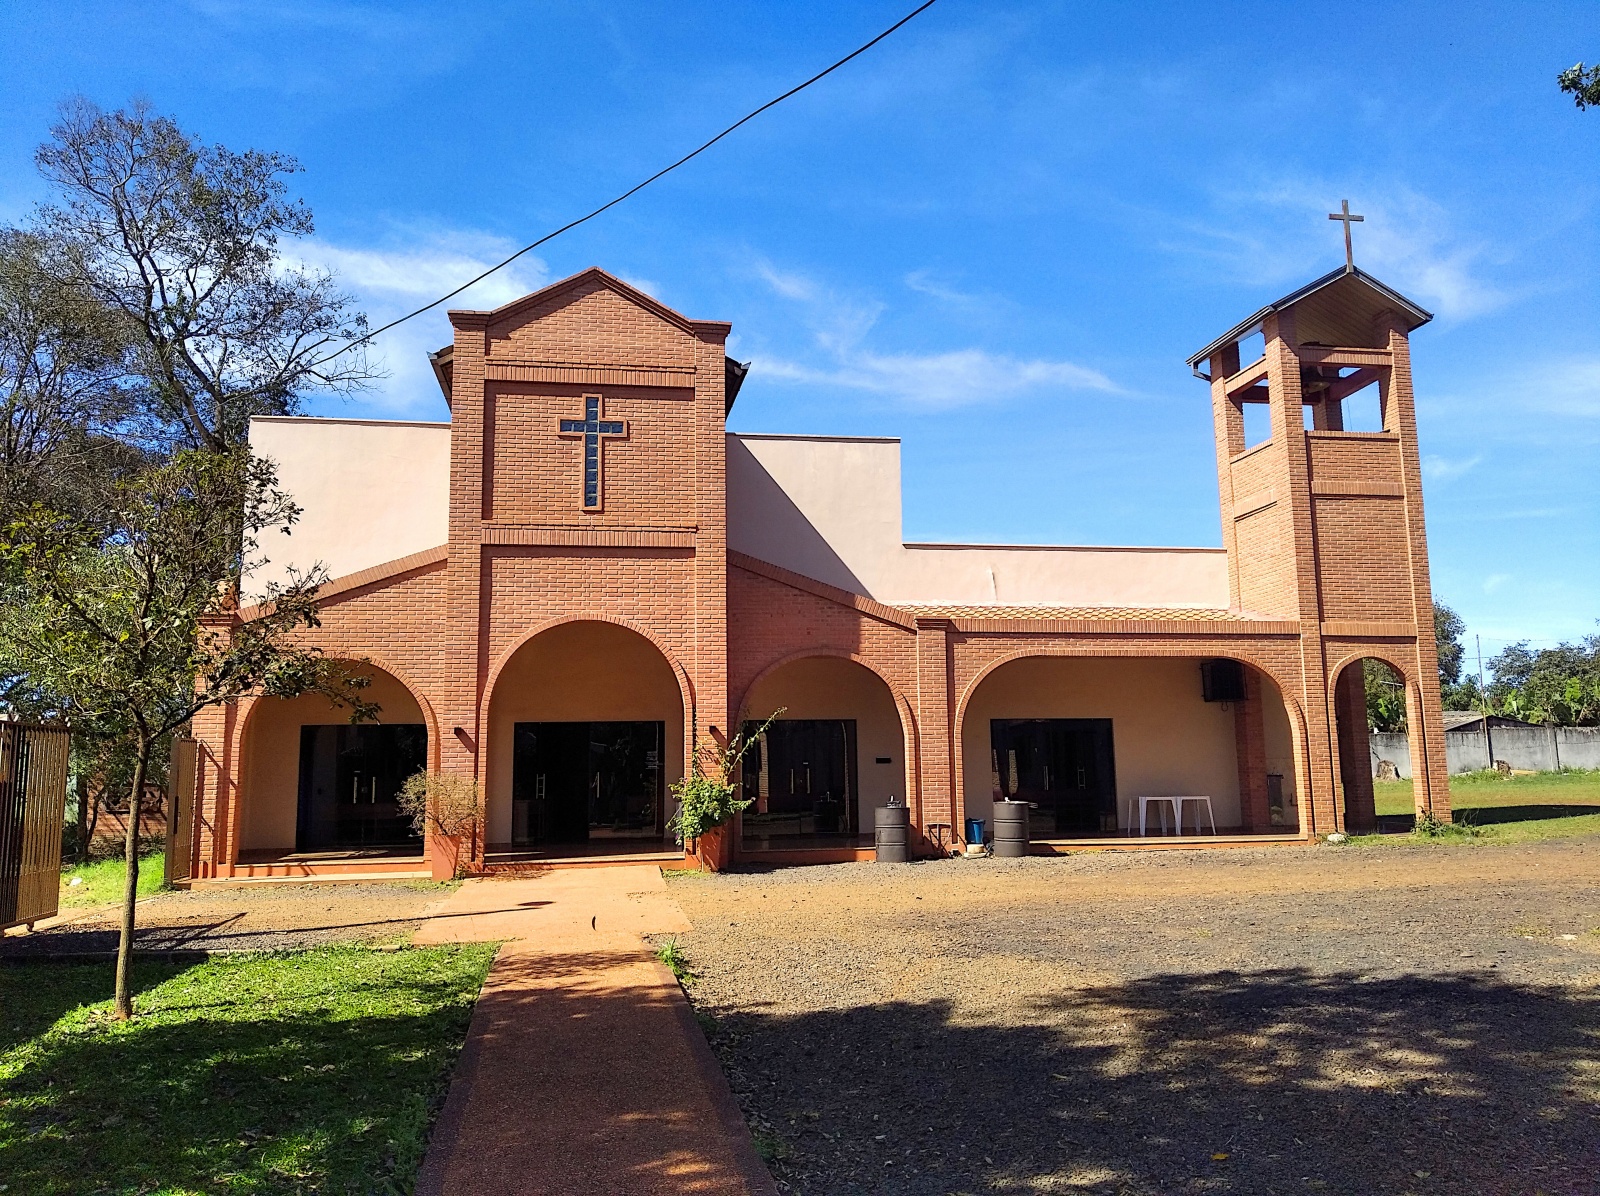 Монастырь капуцинов на окраине Сьюдад-дель-Эсте, второго по величине города Парагвая. Капуцины - это католический монашеский орден. По субботам здесь бесплатно кормят детей. Раз в месяц детям лечат зубы и дают необходимые лекарства. Опять же, бесплатно.